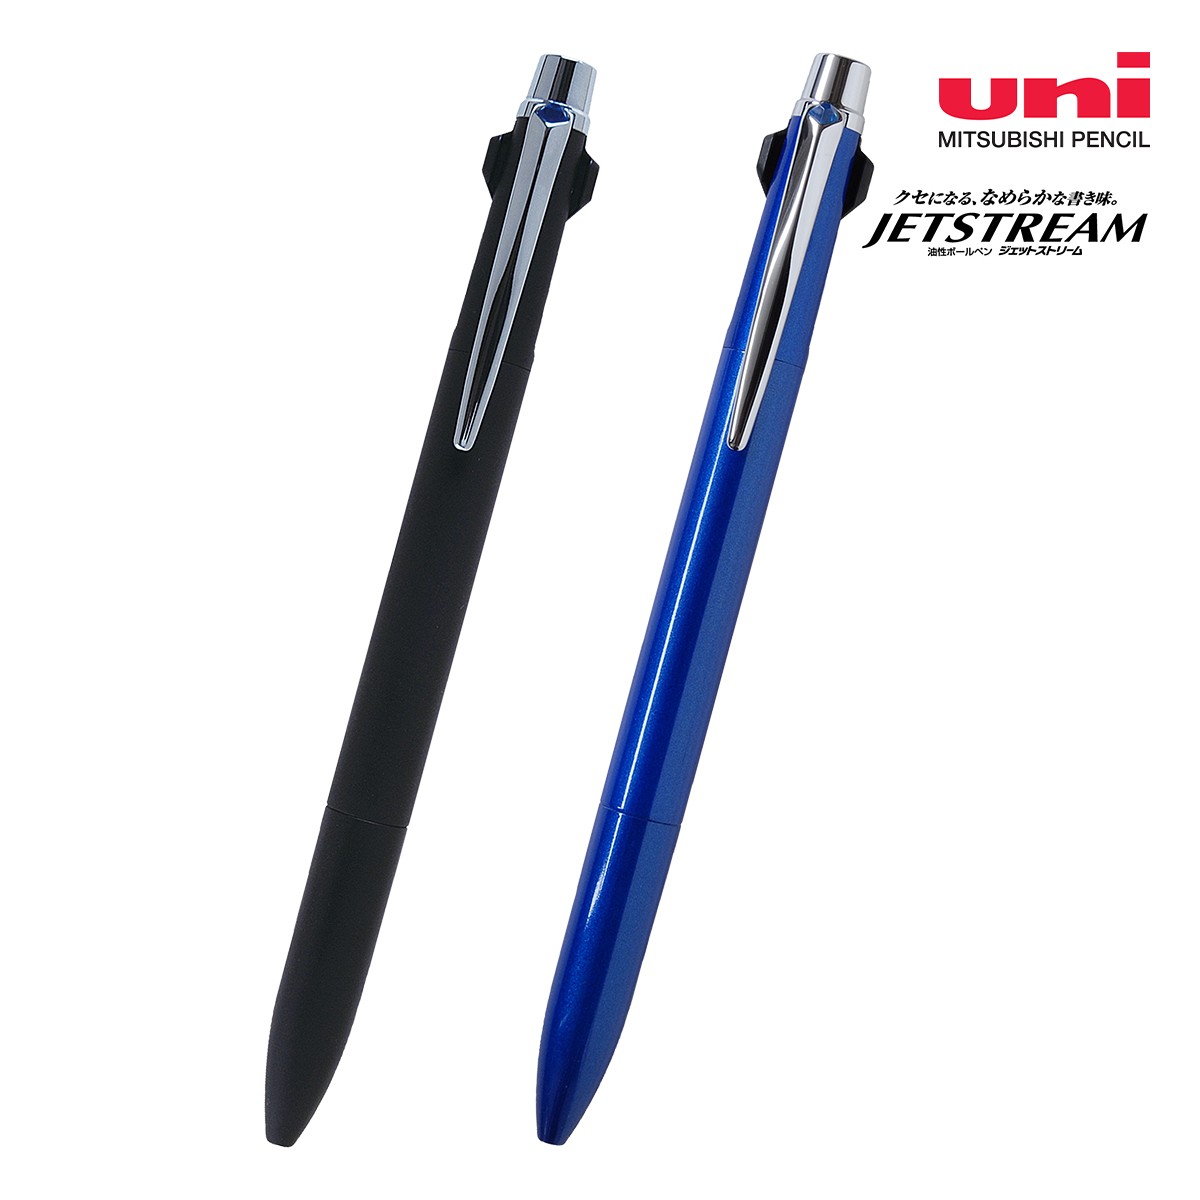 【短納期】三菱鉛筆 ジェットストリーム プライム 3色ボールペン 0.7mm【名入れボールペン / レーザー彫刻】 画像1